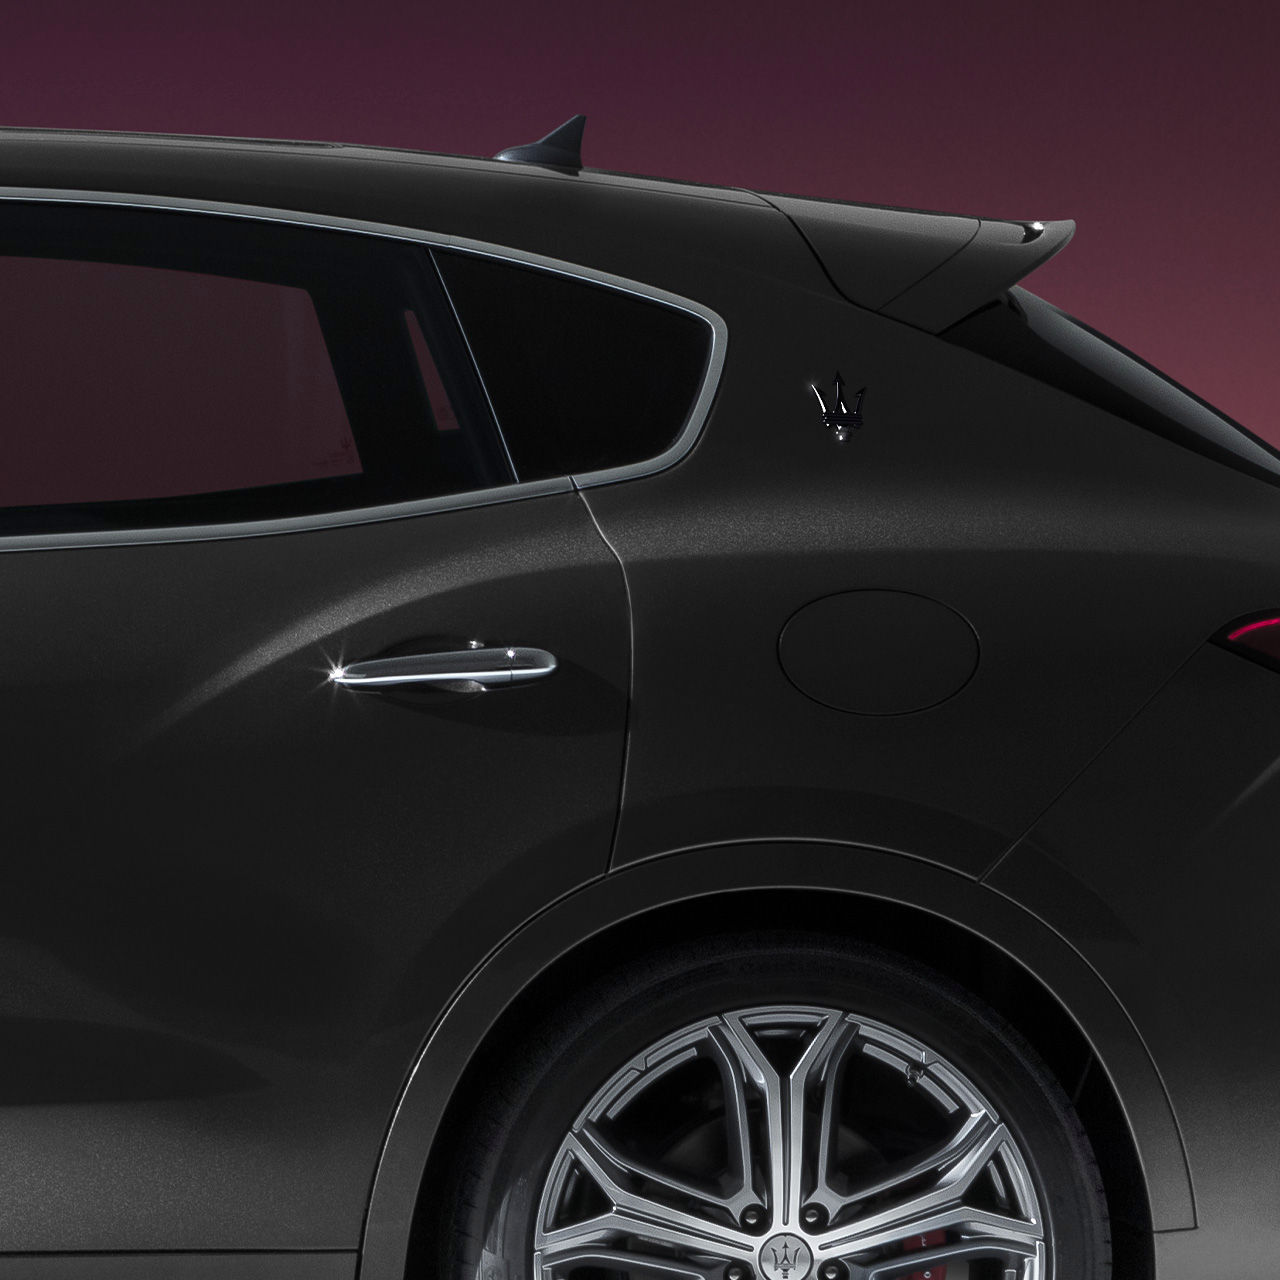 Puerta y rueda del SUV Maserati Levante